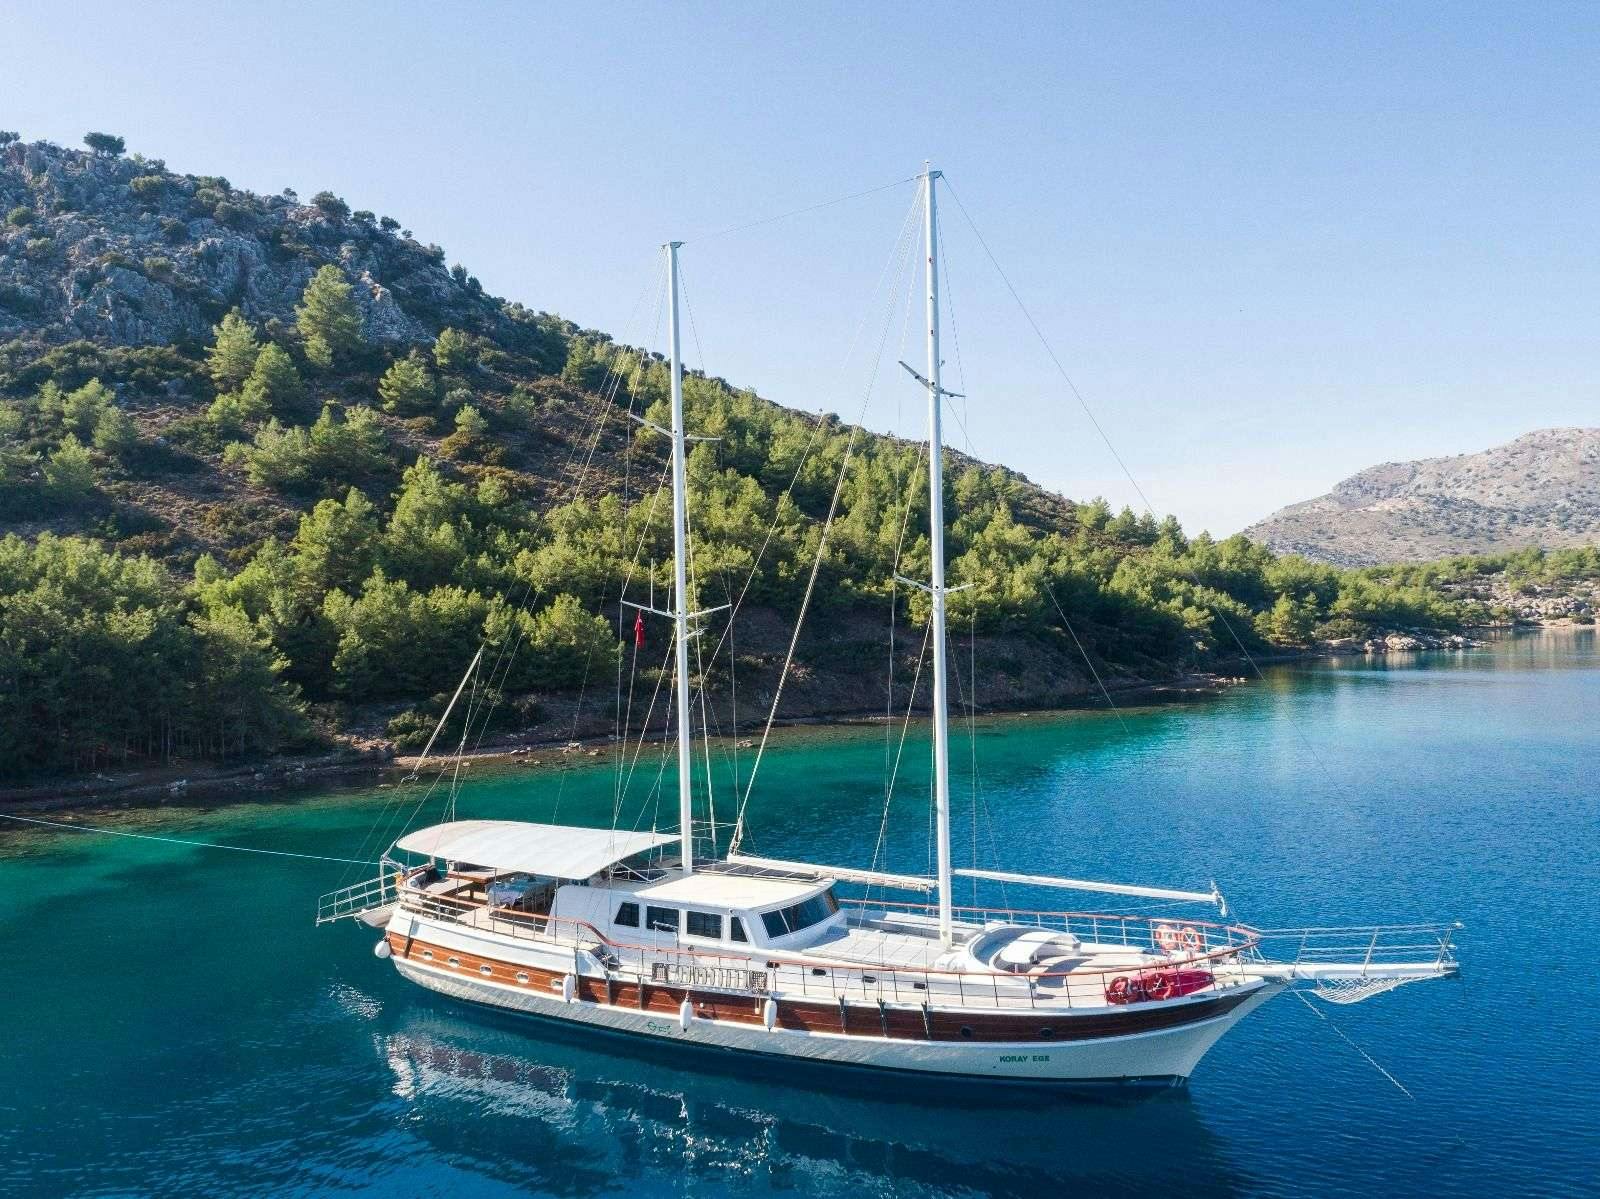 koray ege - Yacht Charter Göcek & Boat hire in Greece & Turkey 1